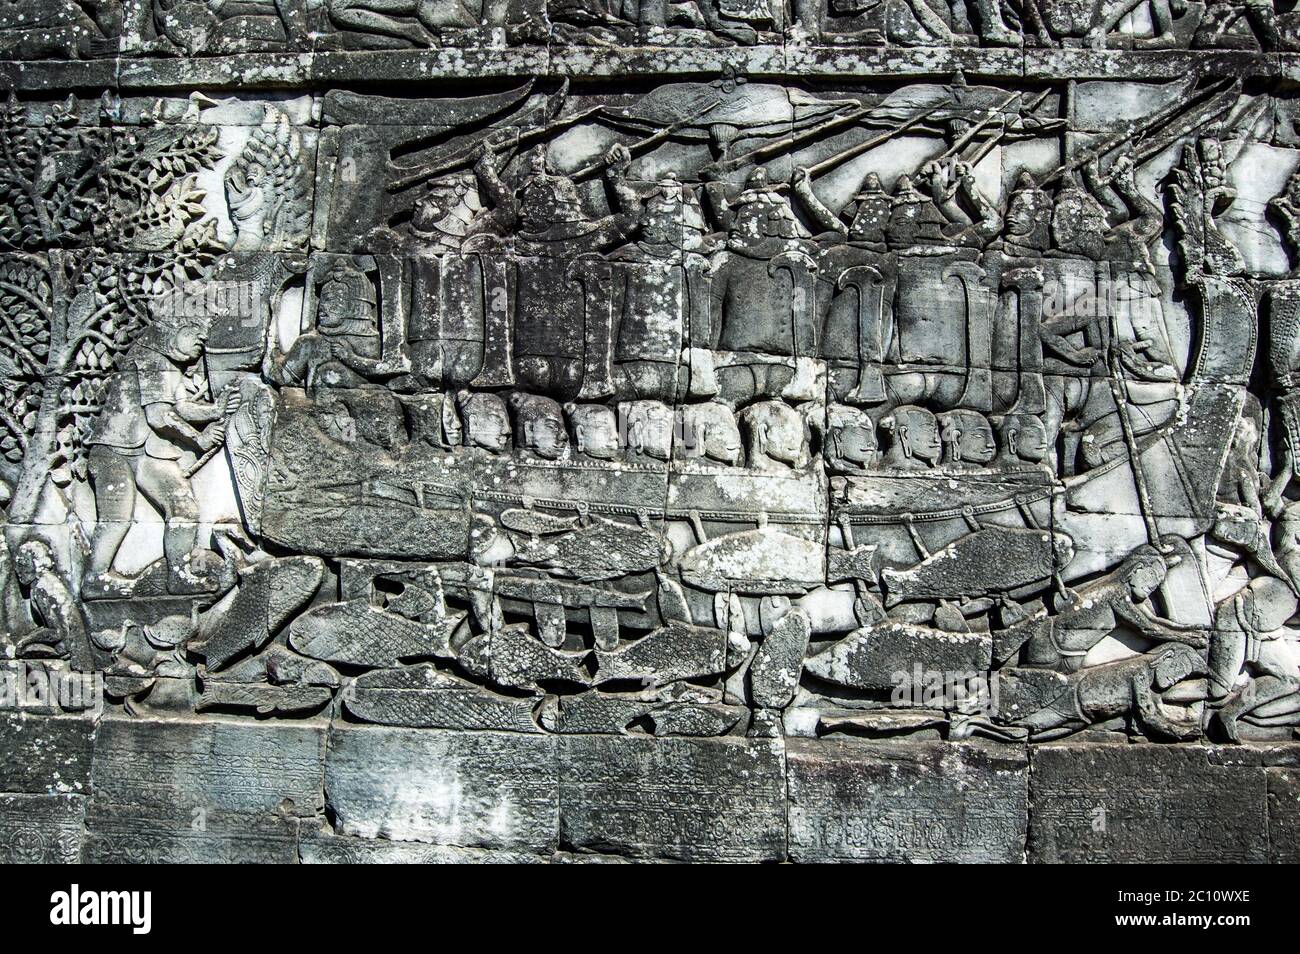 Antica scultura in bassorilievo Khmer che mostra i combattenti Cham che prendono parte a una battaglia navale sul lago Tonle SAP in Cambogia. Tempio di Bayon, Angkor Thom, Sie Foto Stock